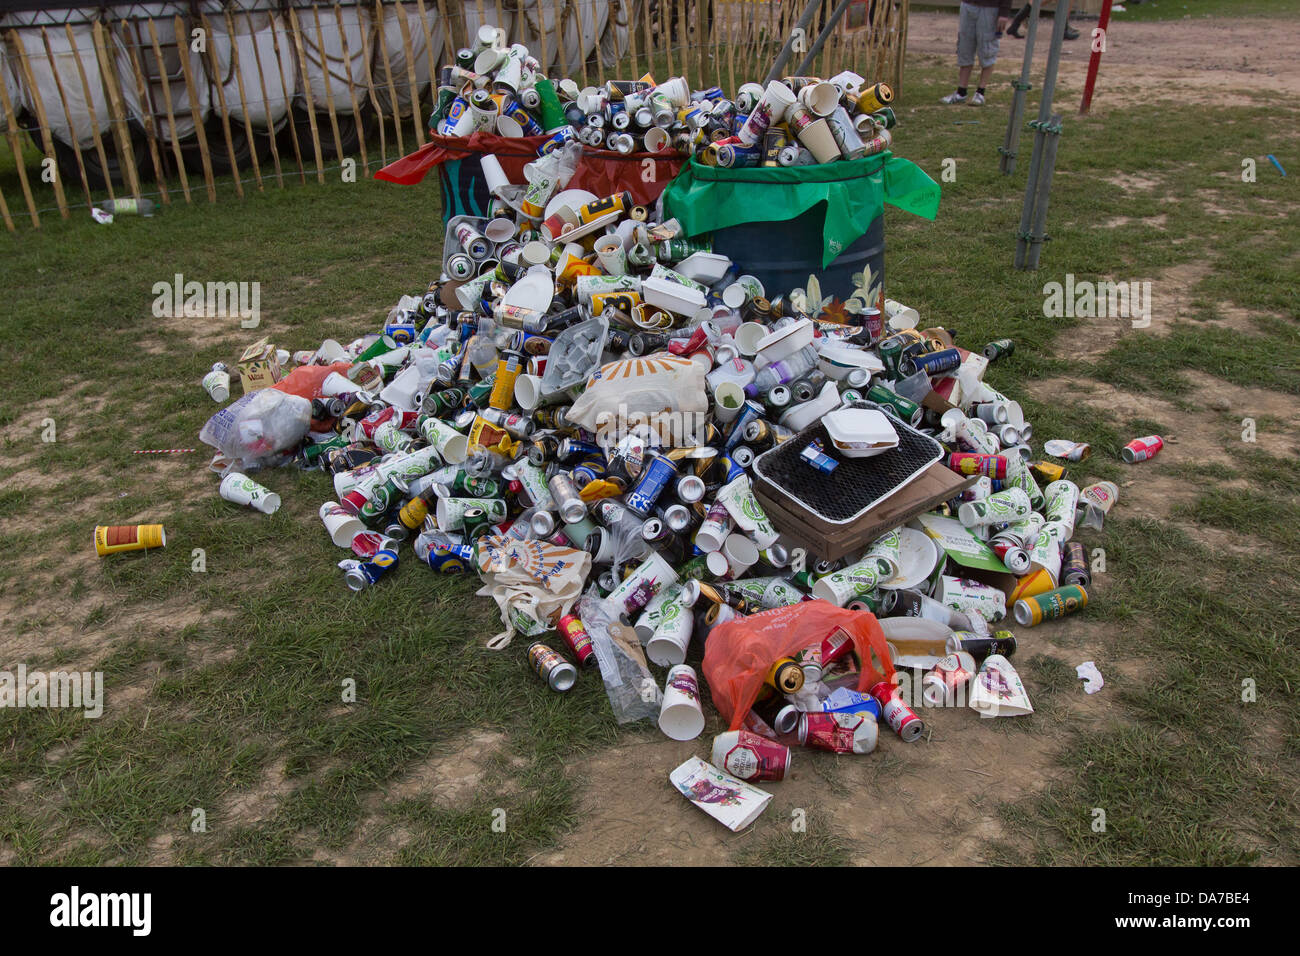 Traboccante bidoni della spazzatura presso il festival di Glastonbury 2013. Foto Stock